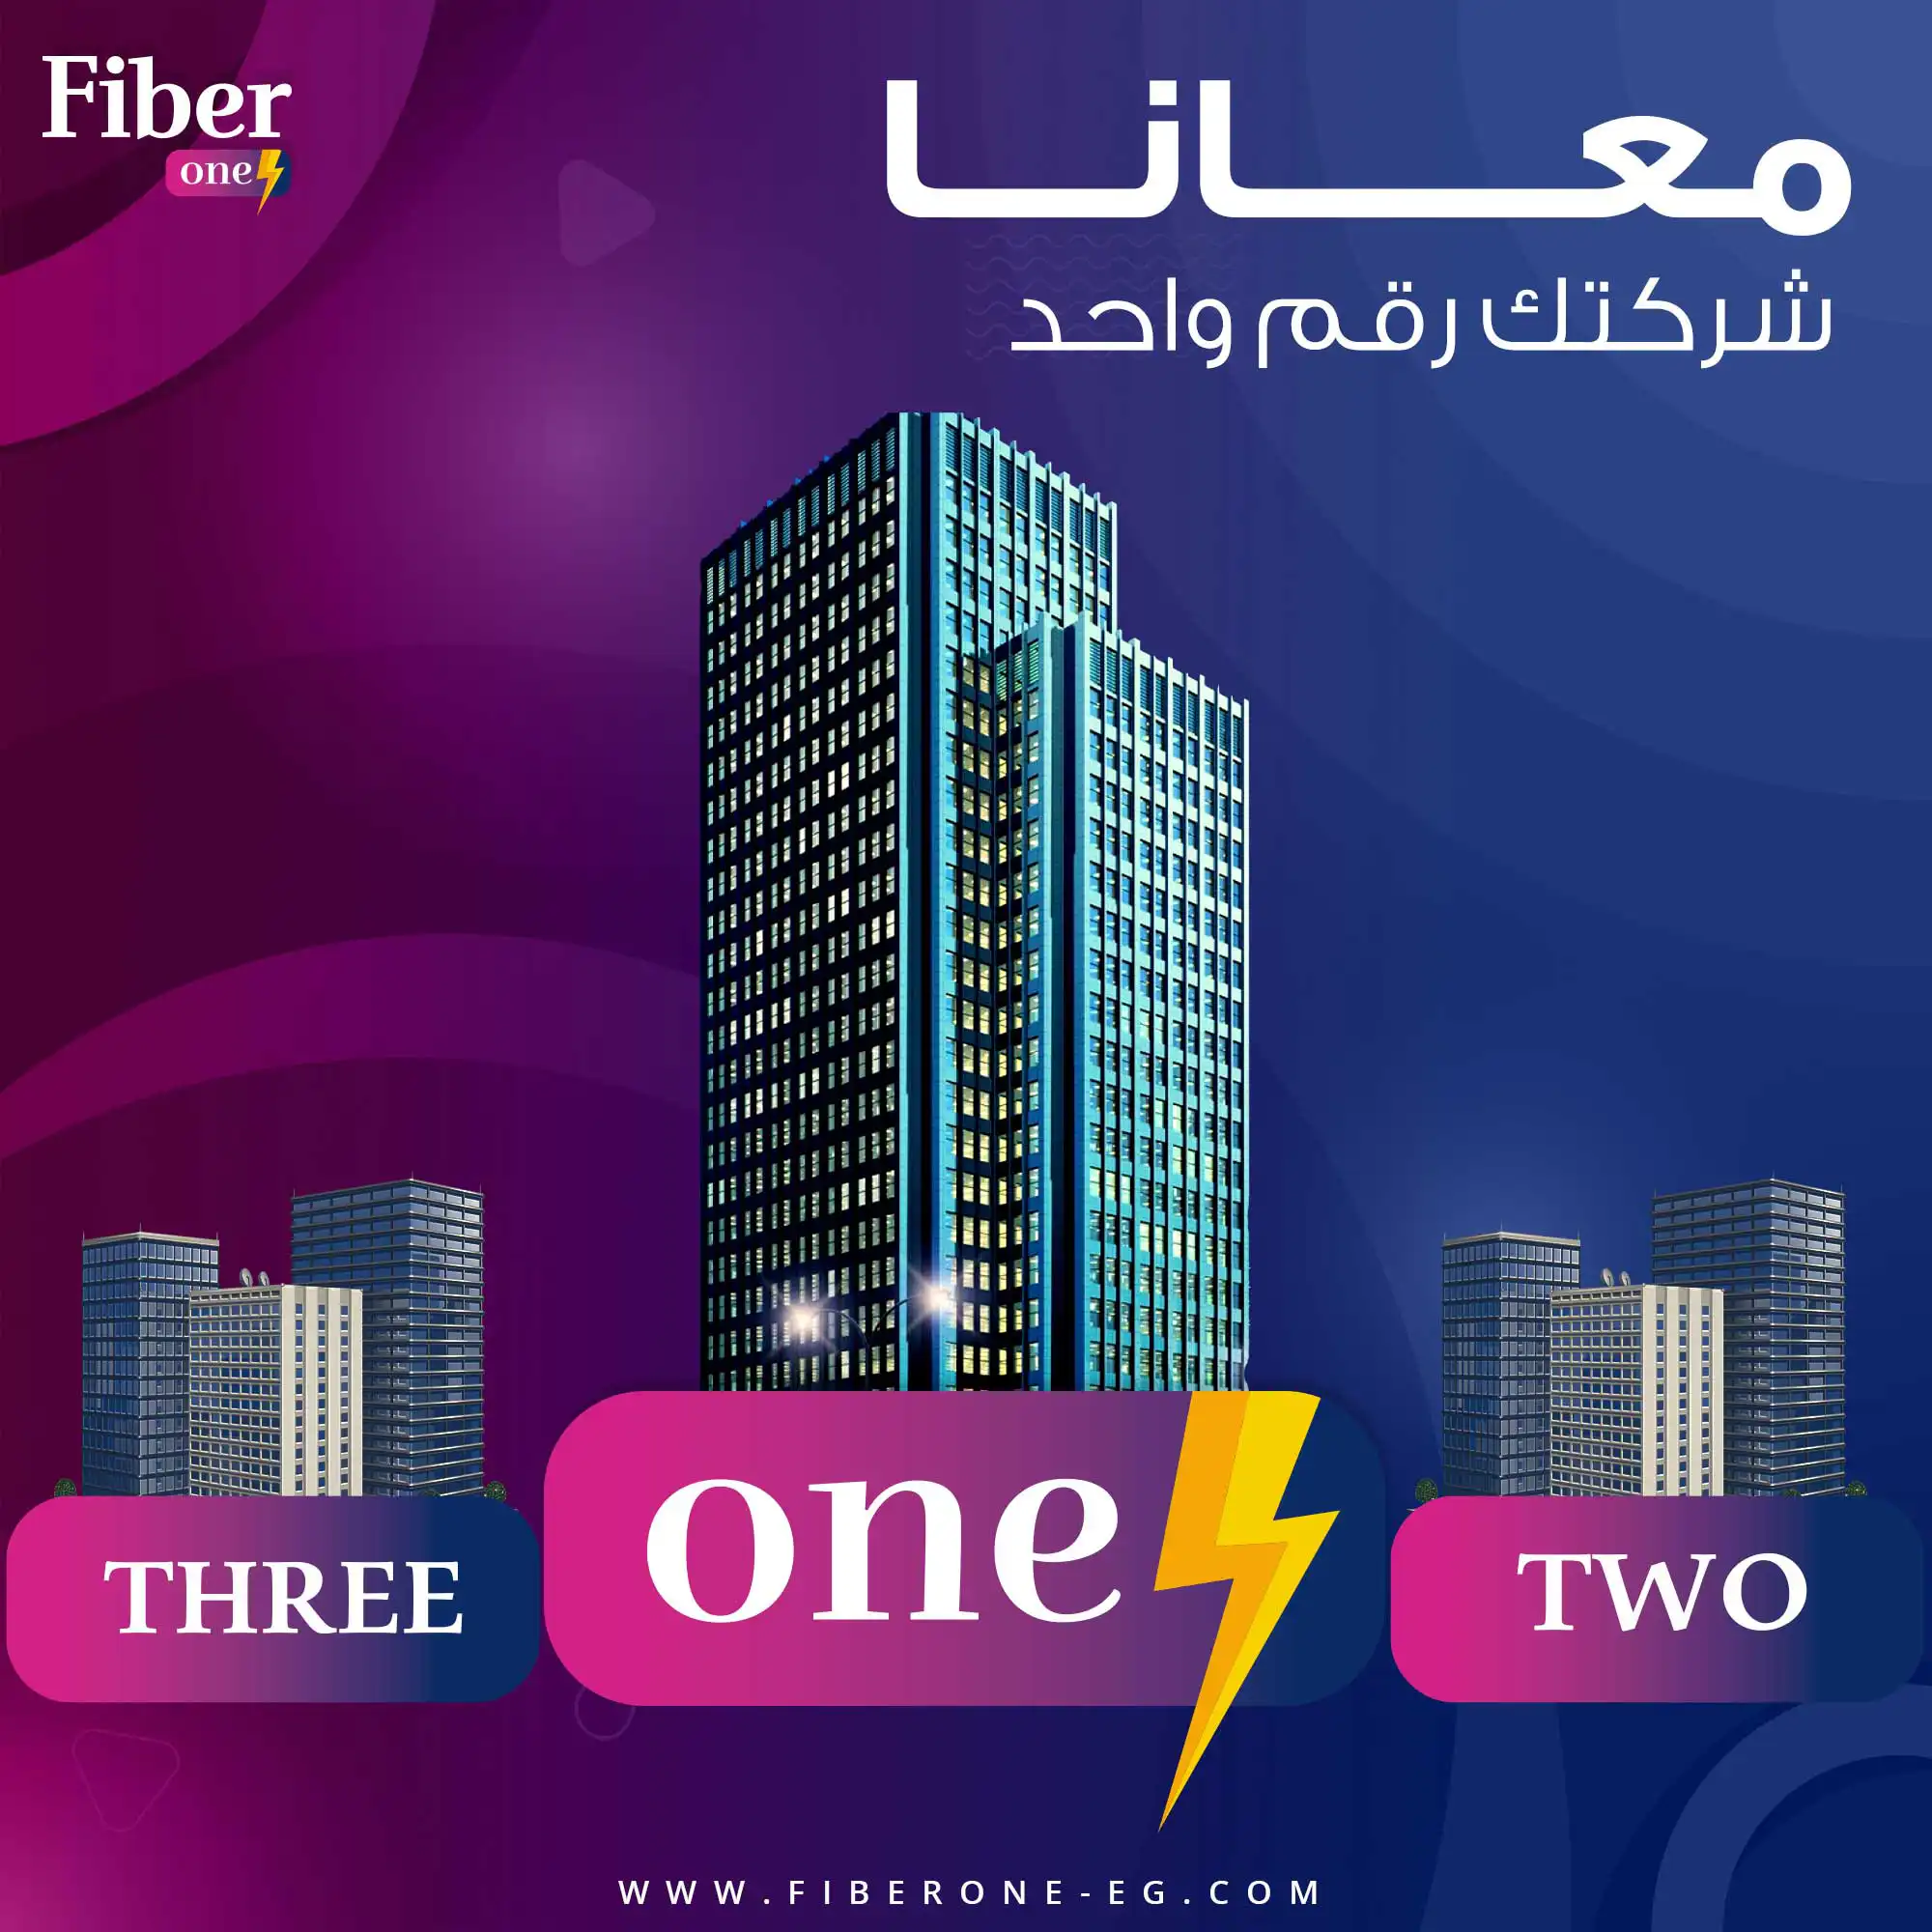 fiber one social media 3